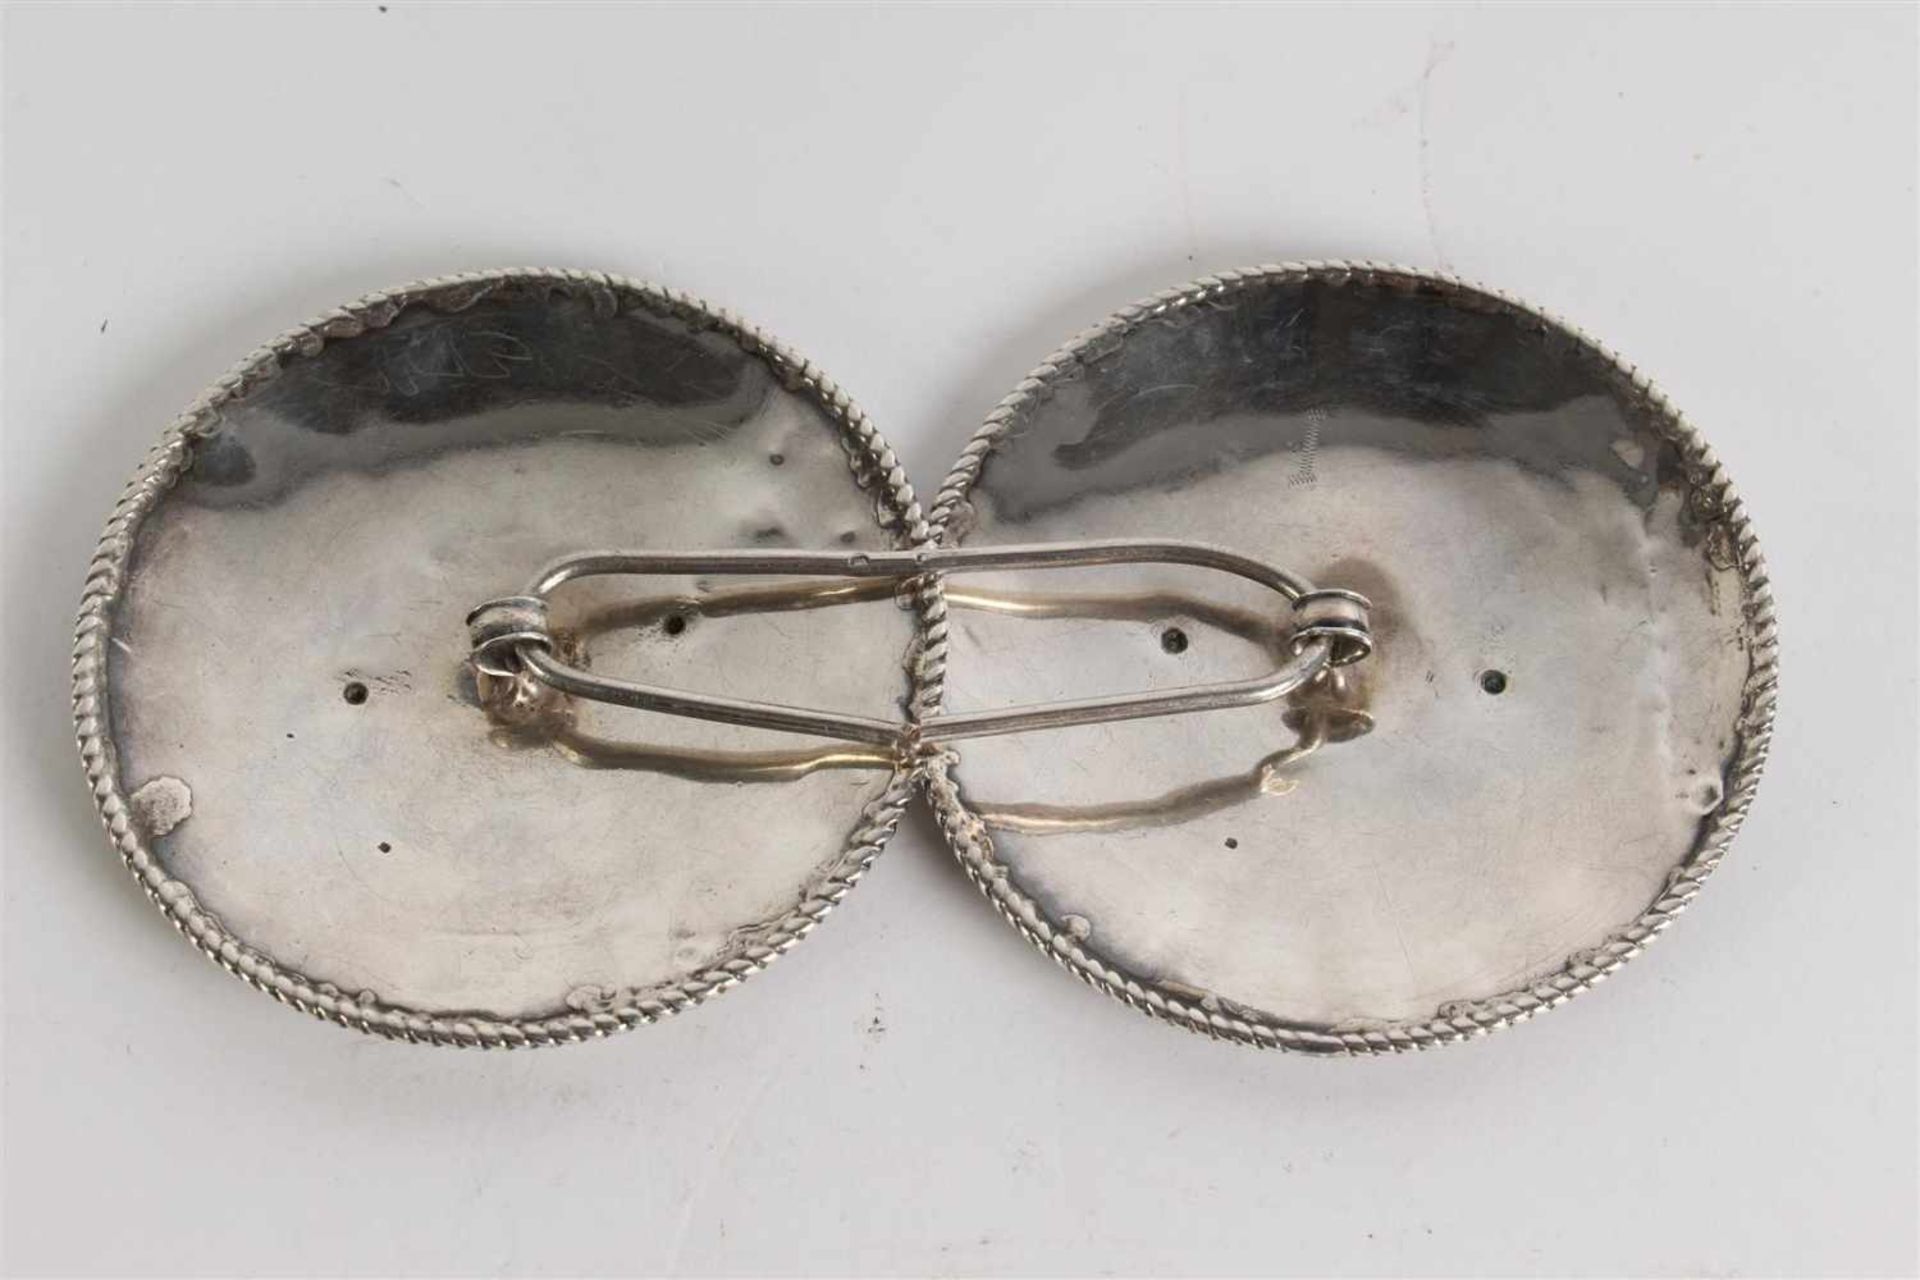 Stel zilveren broekstukken van de Walcherse dracht. D: 8.5 cm. - Bild 2 aus 5